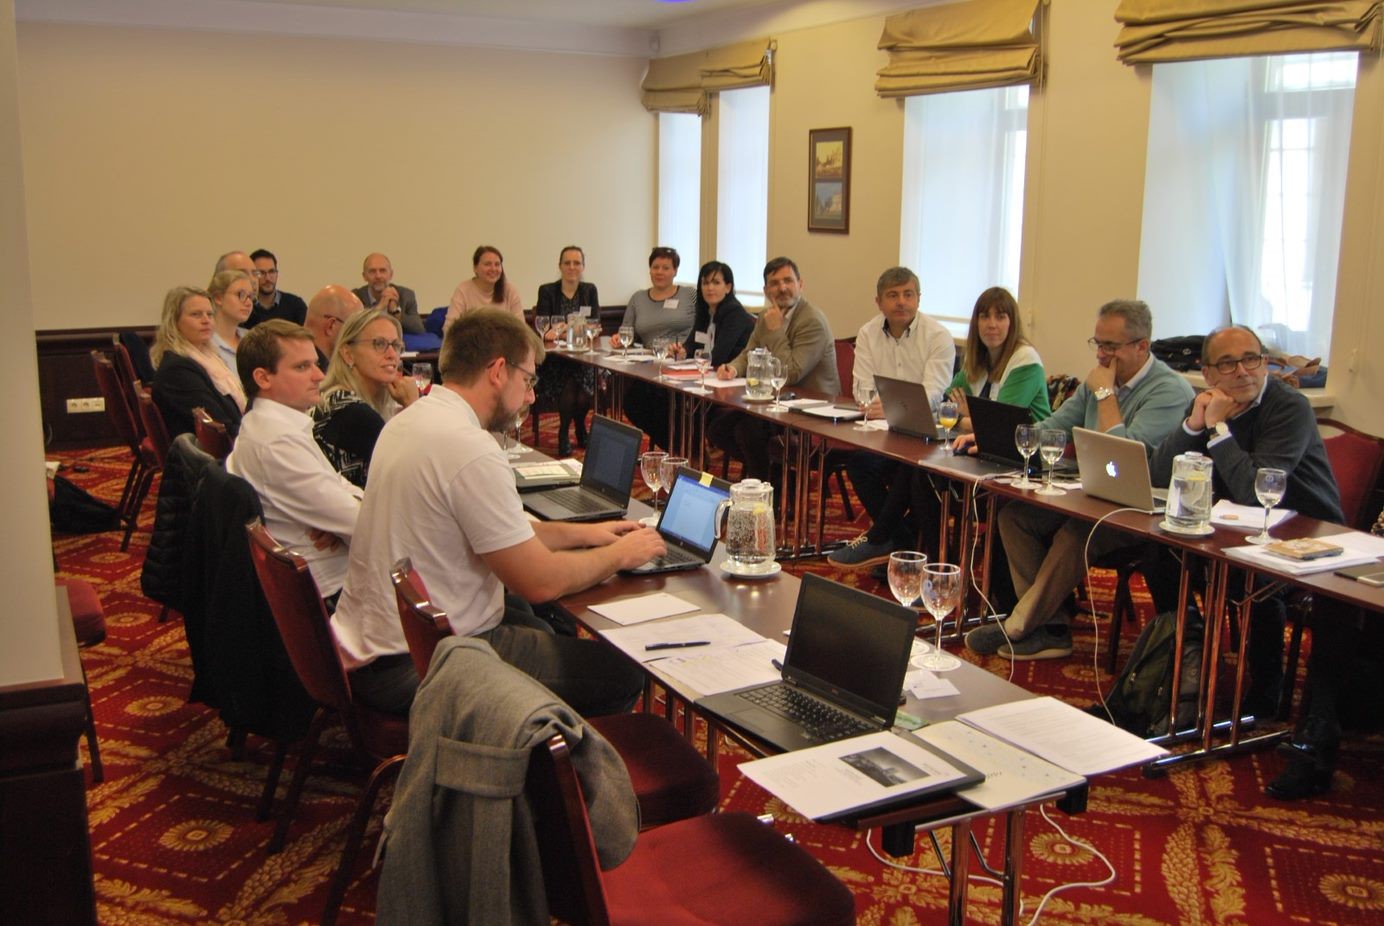 Photos of the Vilnius interregional session